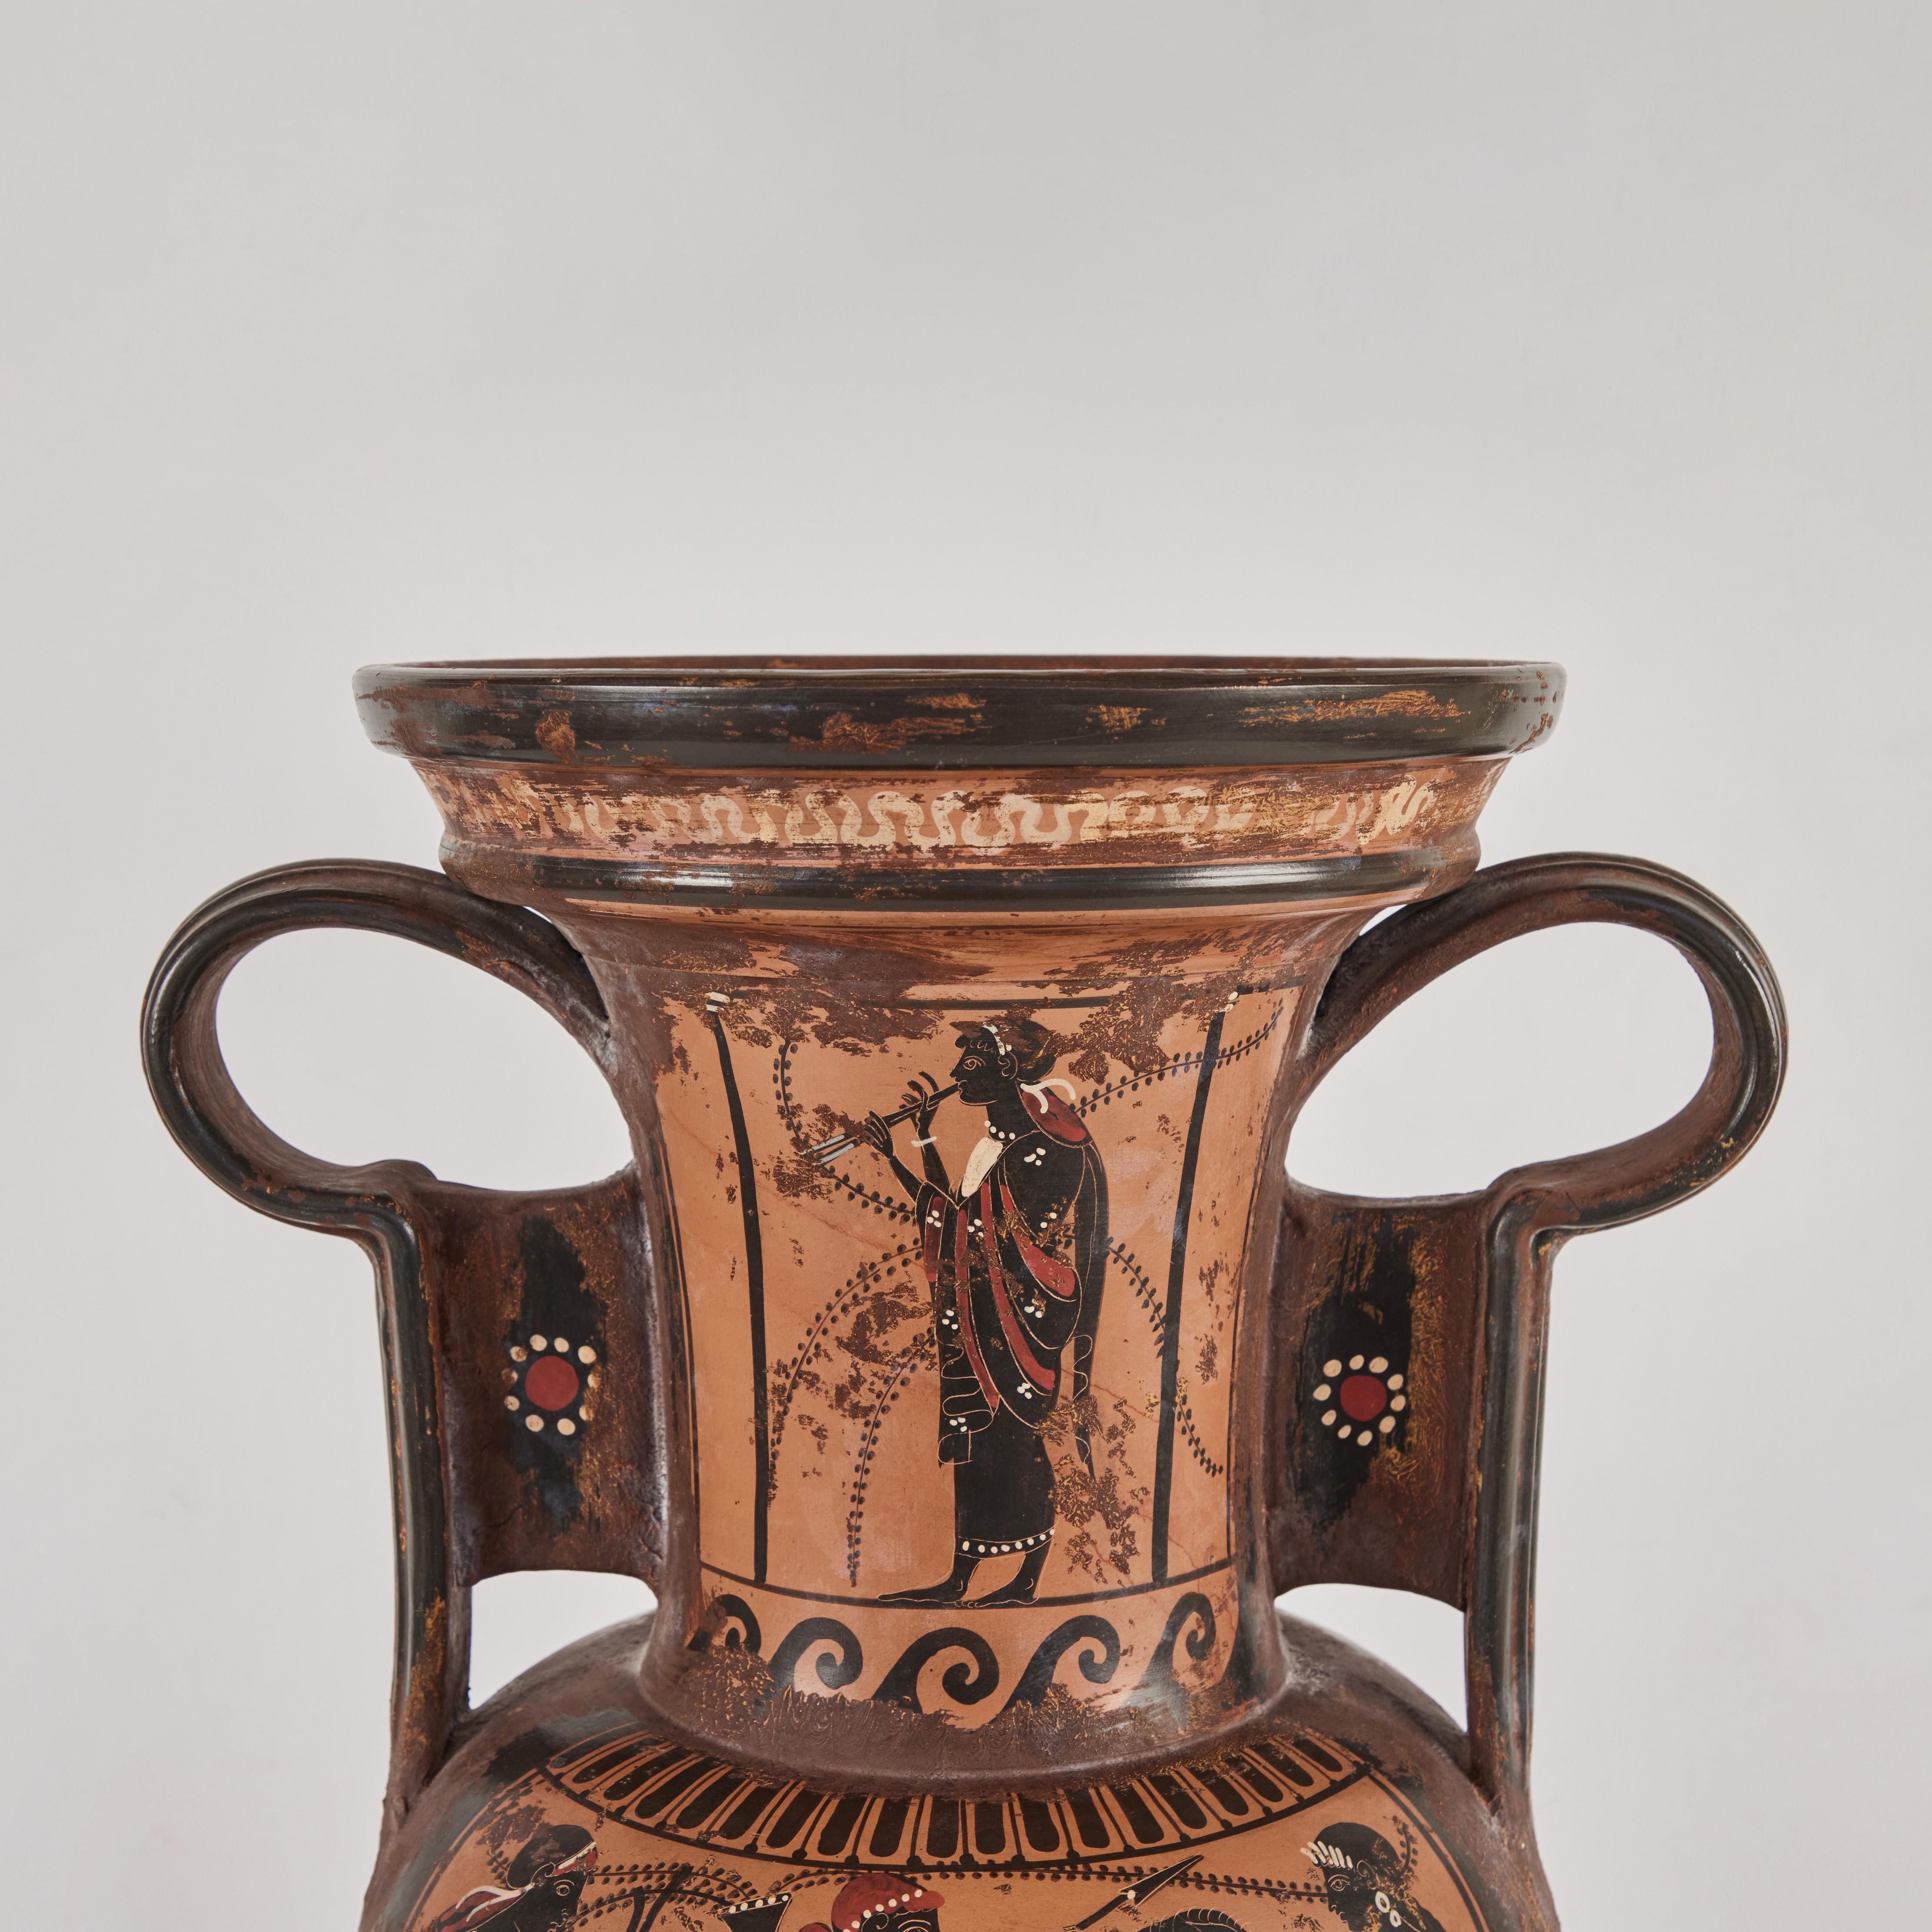 Une version Grand Tour d'une jarre d'amphore de la Grèce antique. Terre cuite peinte avec des personnages et des chevaux. La jarre à deux anses contenait de l'huile, du vin, du lait ou du grain.  Cette pièce date de la fin du XIXe ou du début du XXe